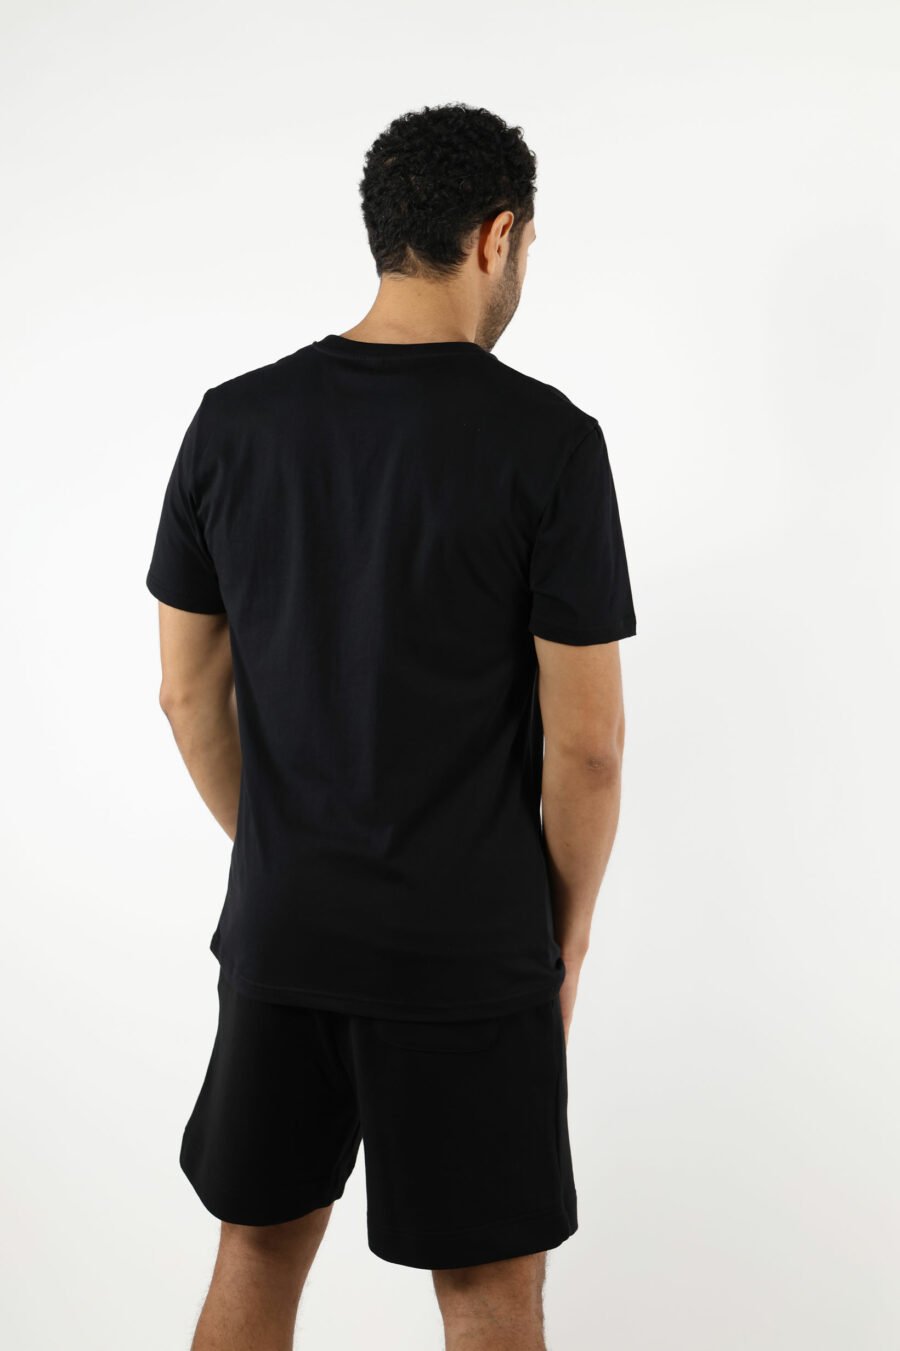 Camiseta negra con minilogo multicolor - 111040